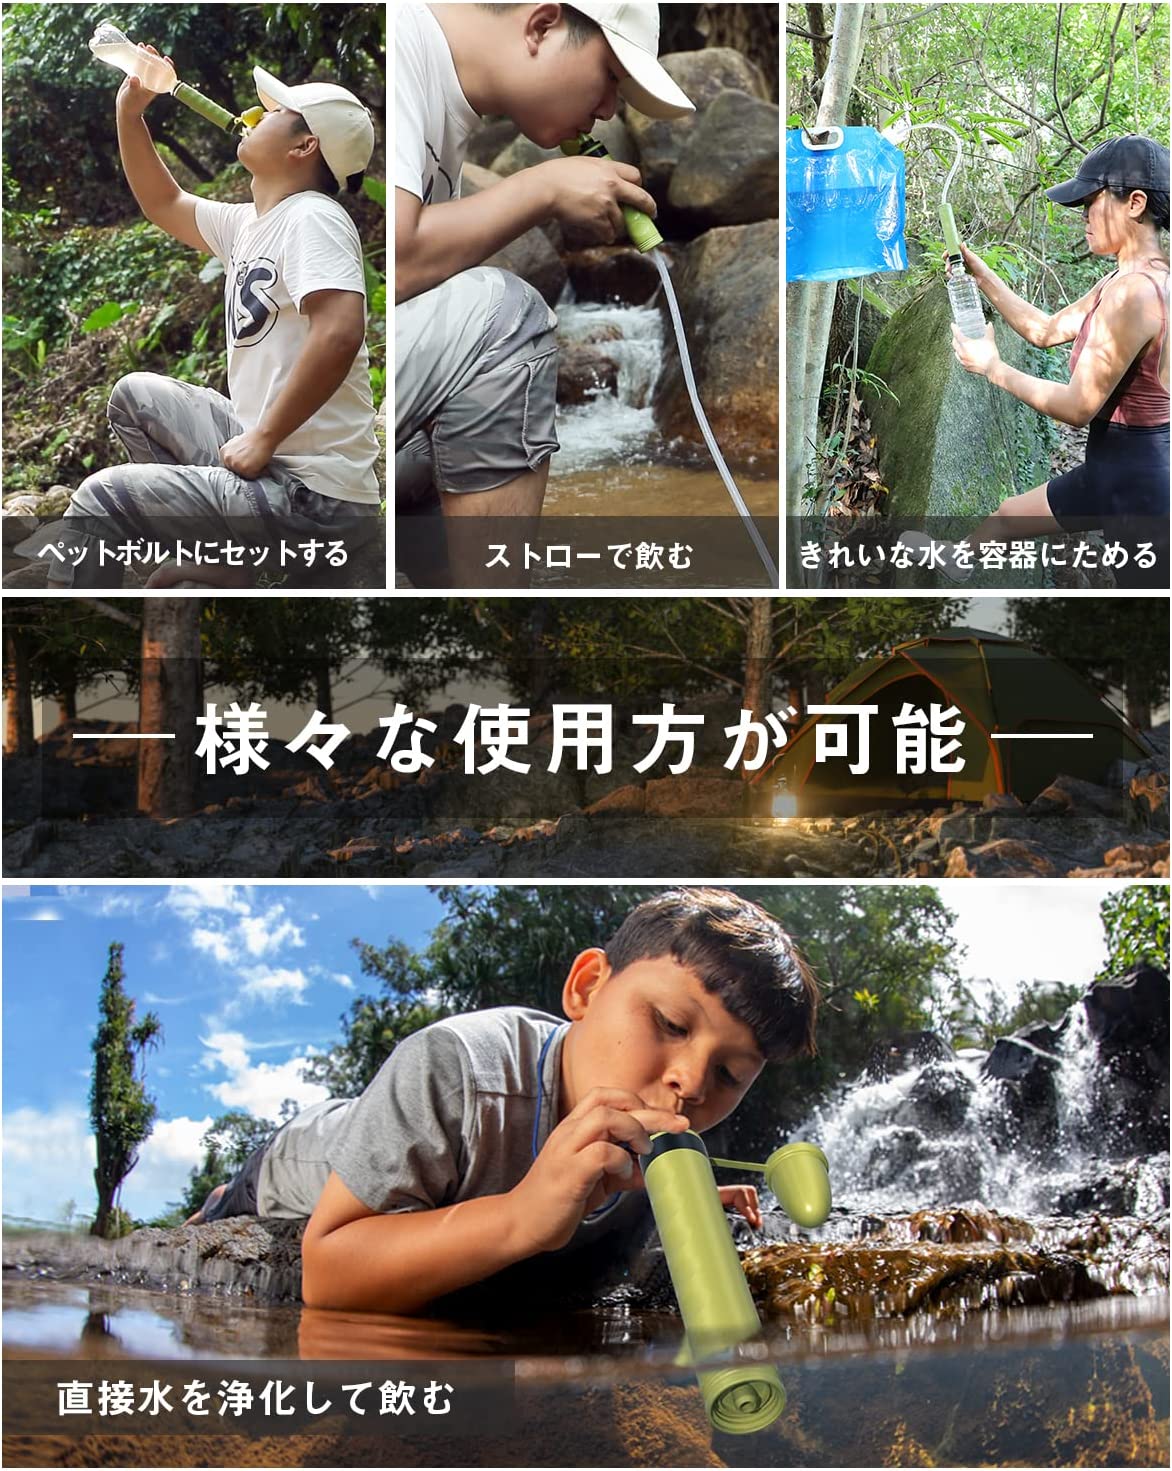 GreeShow 携帯浄水器 アウトドア サバイバル浄水器 日本正規品災害グッズミニ 軽量コンパクト GS-282